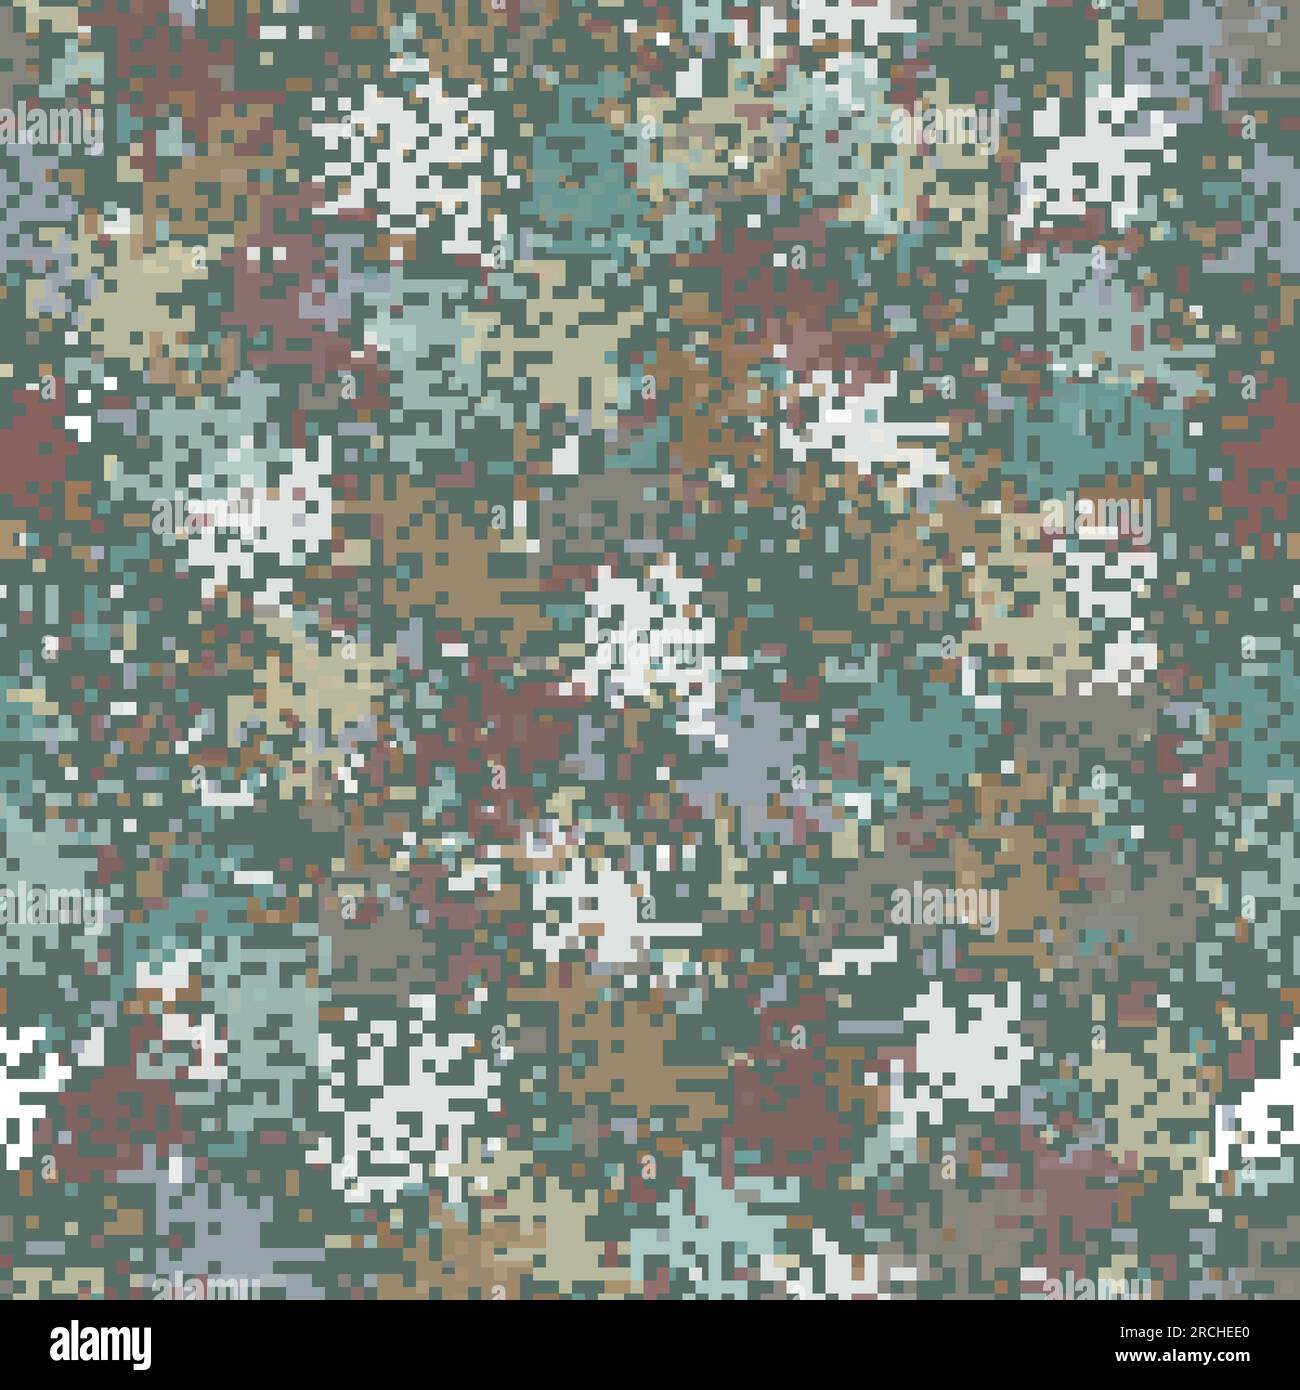 La texture transparente de camouflage militaire. Abstract vector illustration de l'armée Illustration de Vecteur